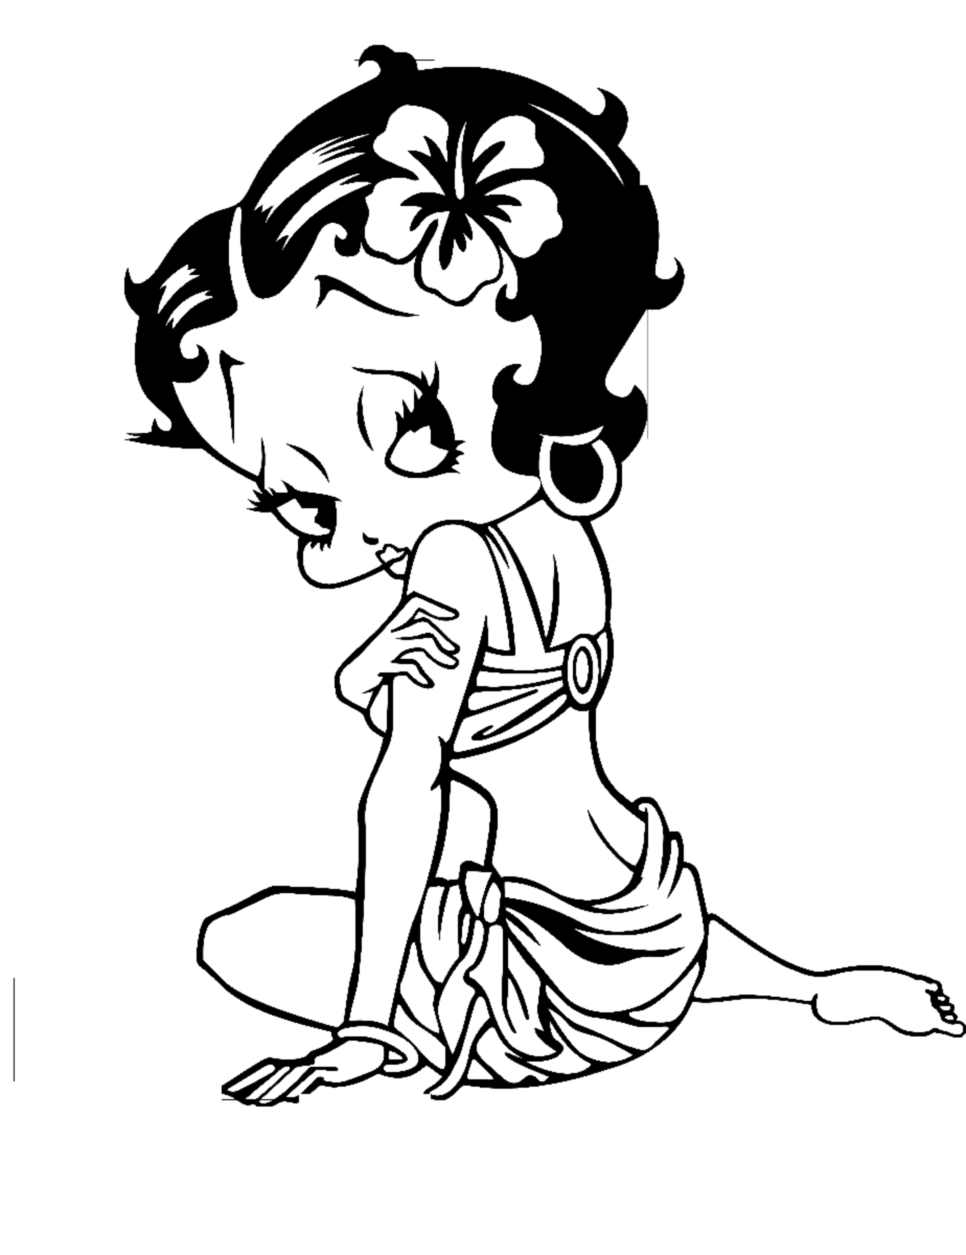 Image de Betty Boop à colorier